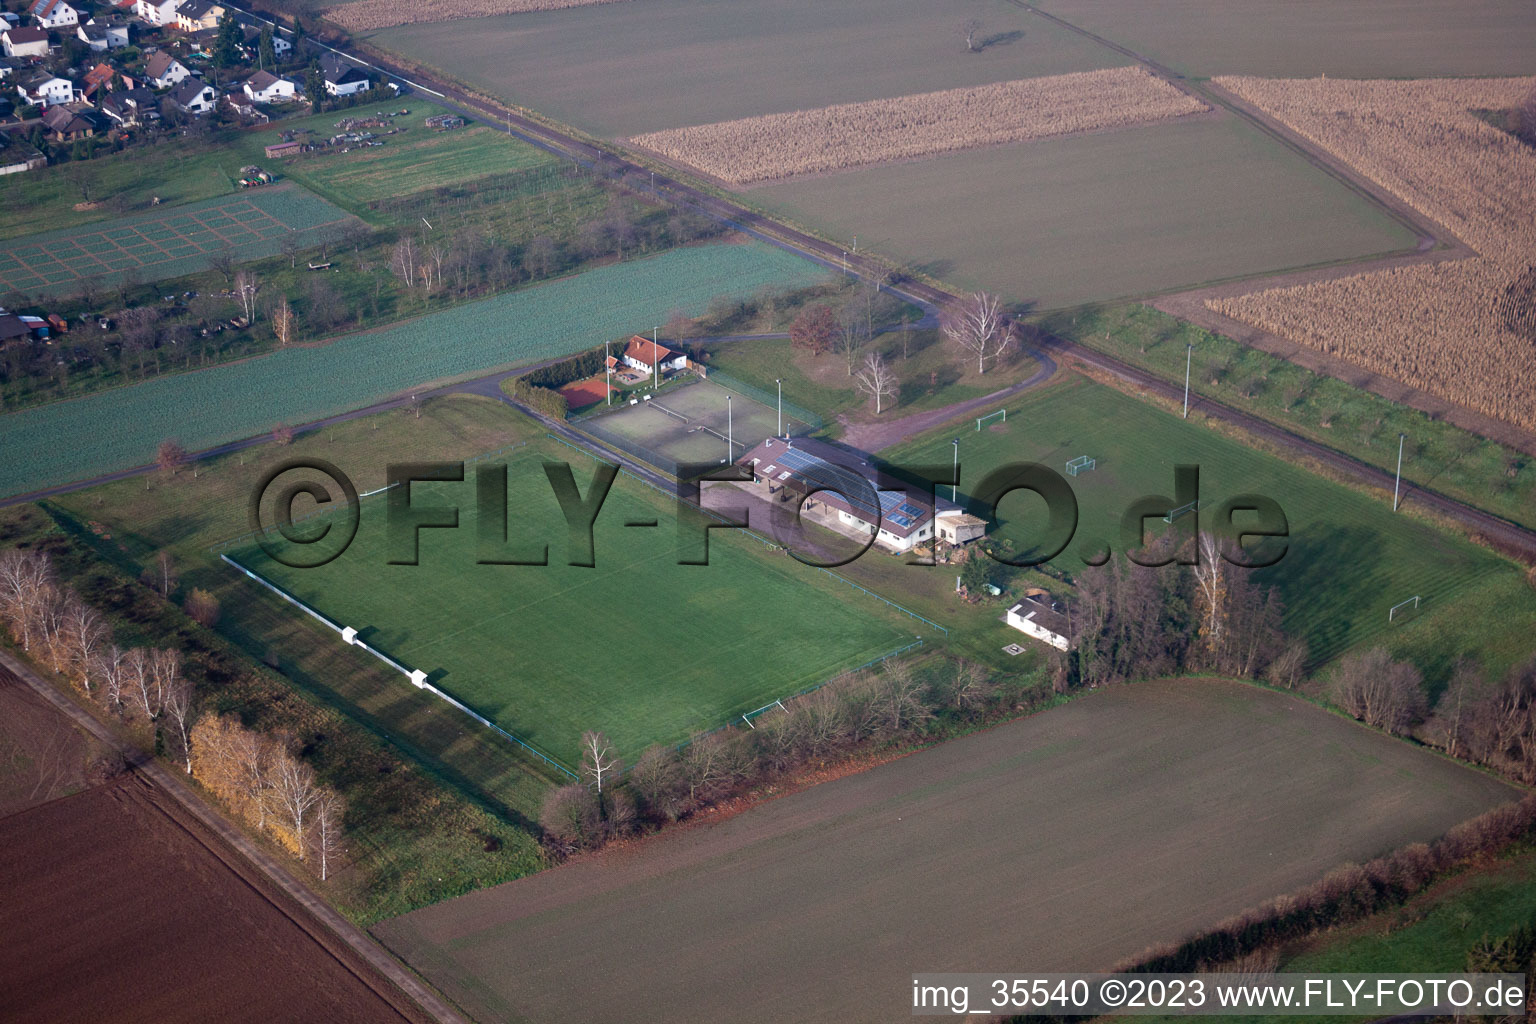 Vue aérienne de Terrain de sport à Barbelroth dans le département Rhénanie-Palatinat, Allemagne